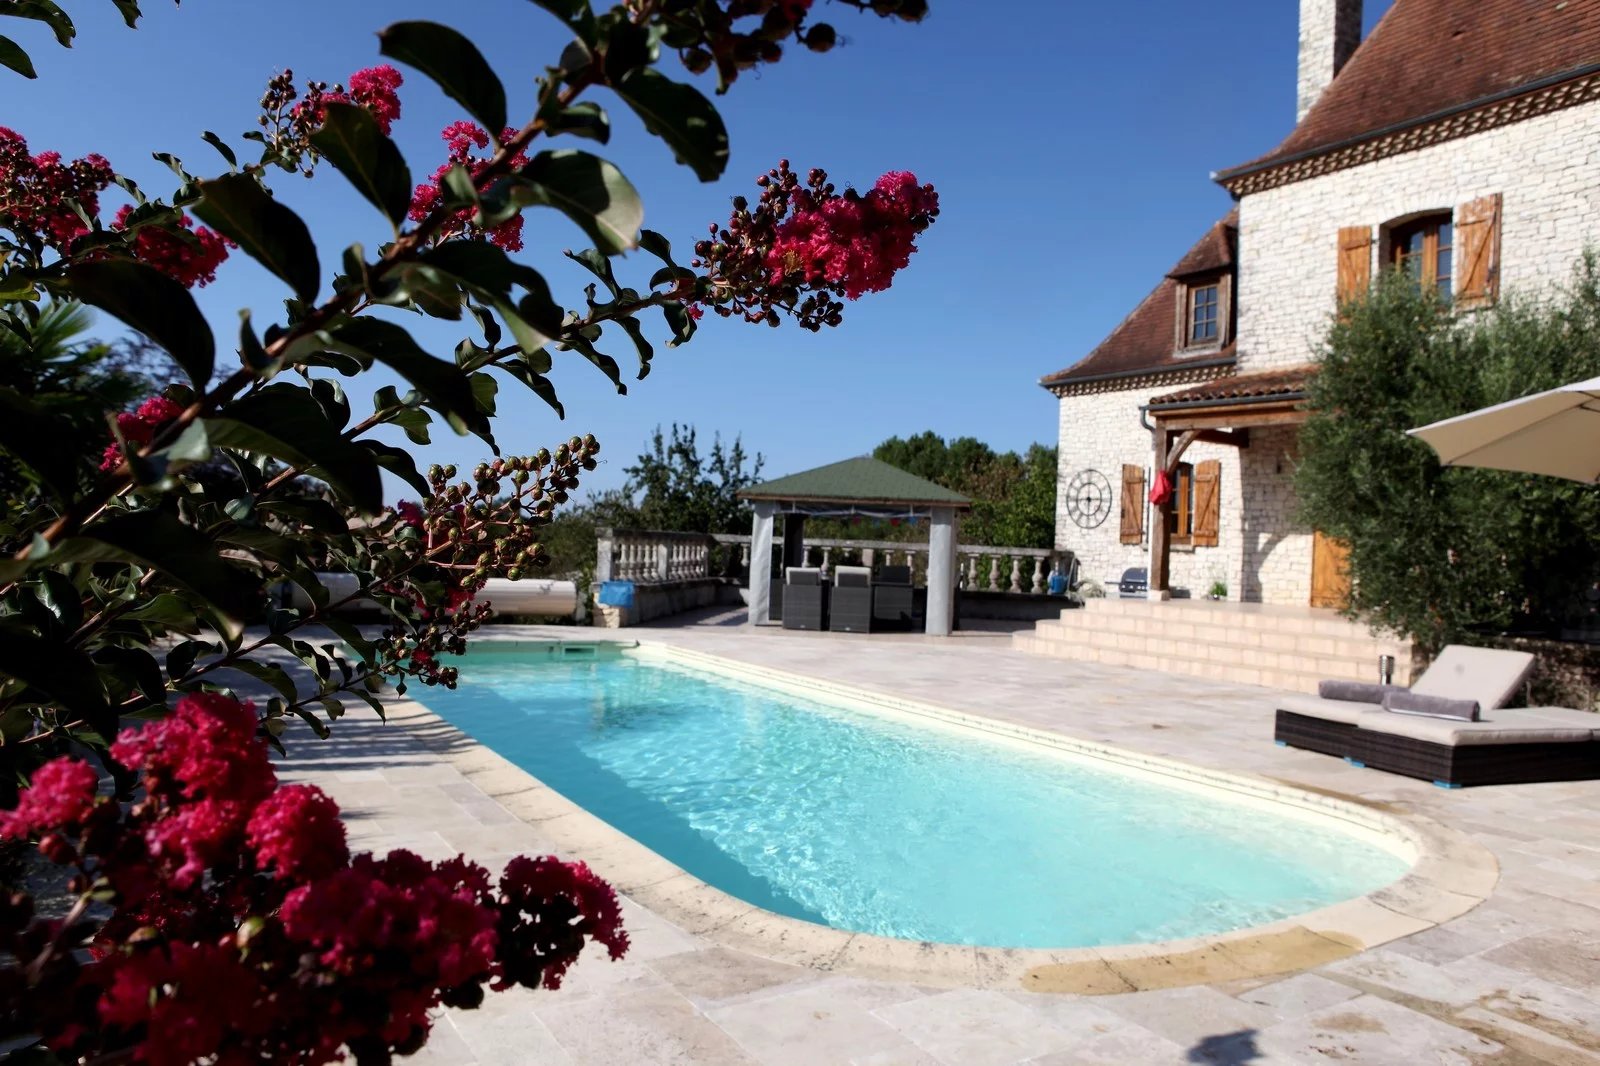 Propriété en pierre de 6 chambres avec piscine et appartement indépendant - Belves Dordogne